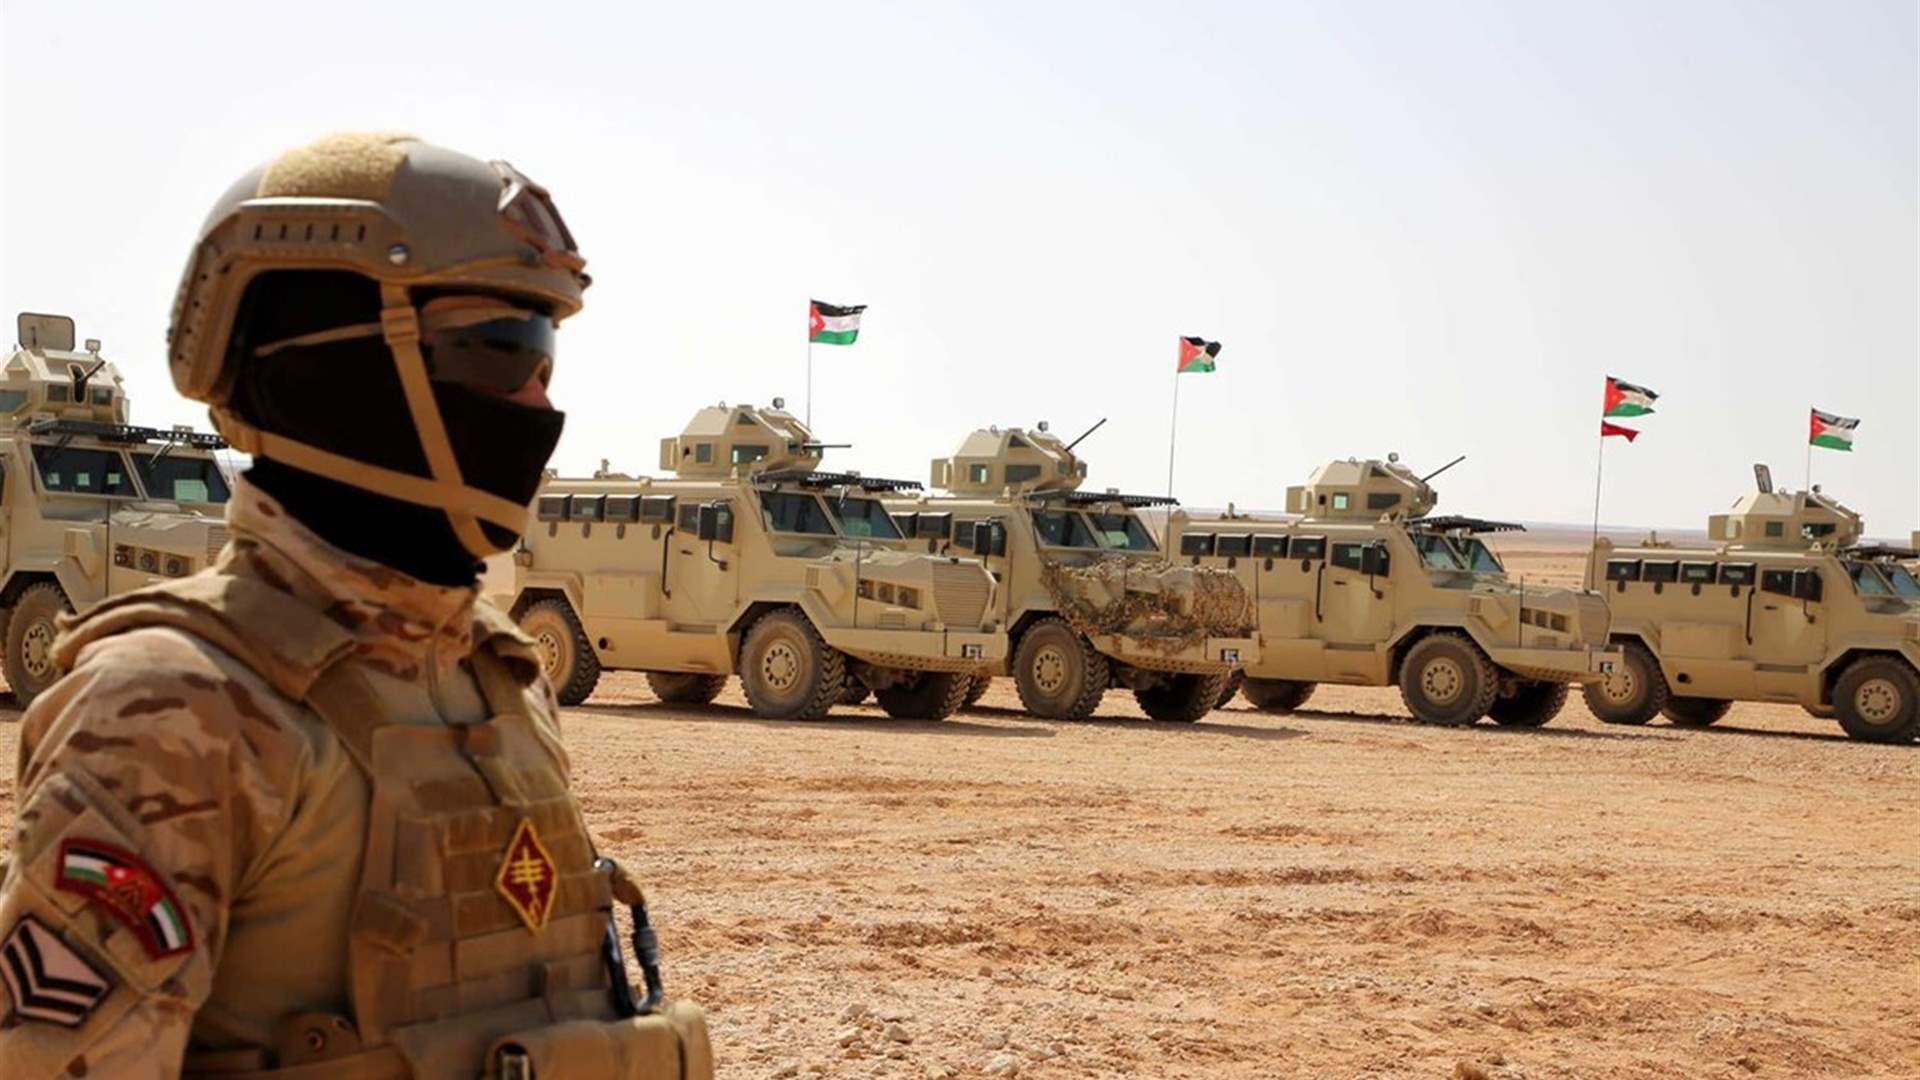 الجيش الأردني يسقط مسيَّرة جديدة حاولت تهريب مخدرات من سوريا